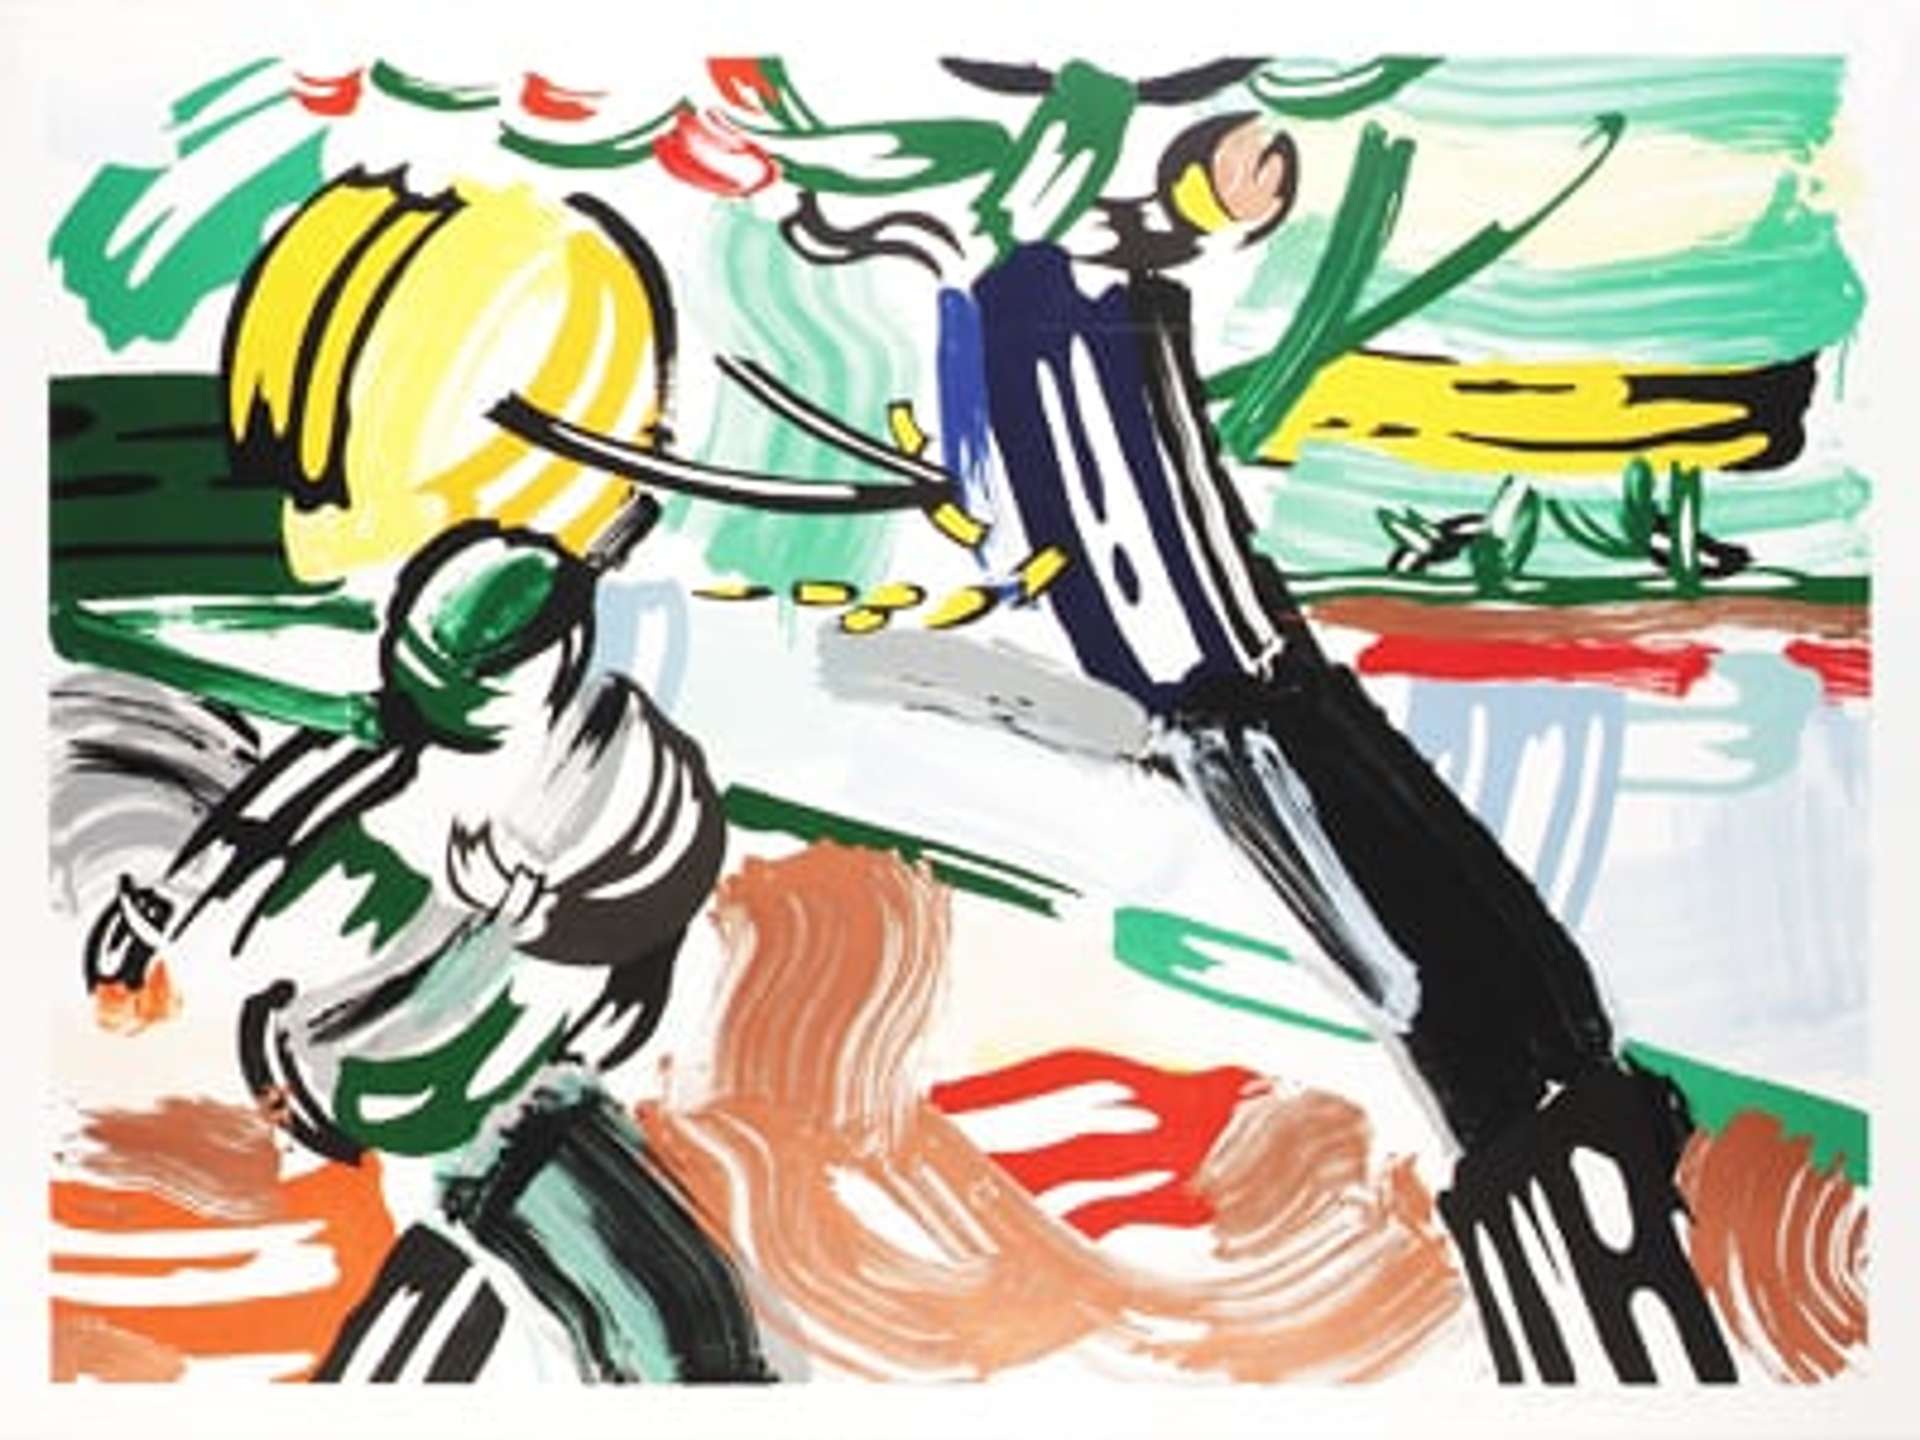 The Sower by Roy Lichtenstein